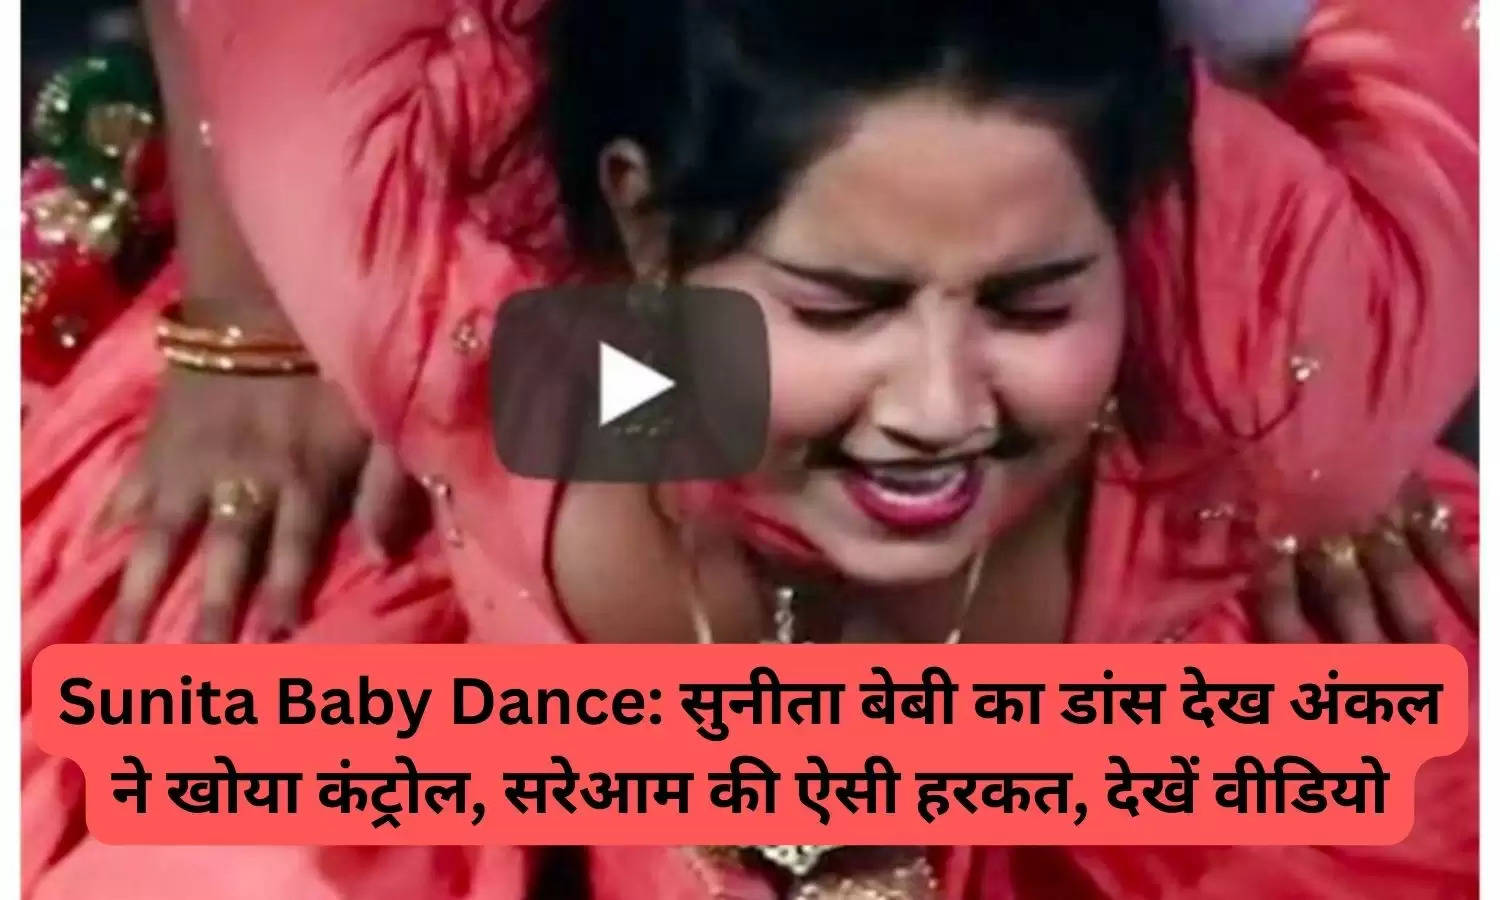 Sunita Baby Dance: सुनीता बेबी का डांस देख अंकल ने खोया कंट्रोल, सरेआम की ऐसी हरकत, देखें वीडियो